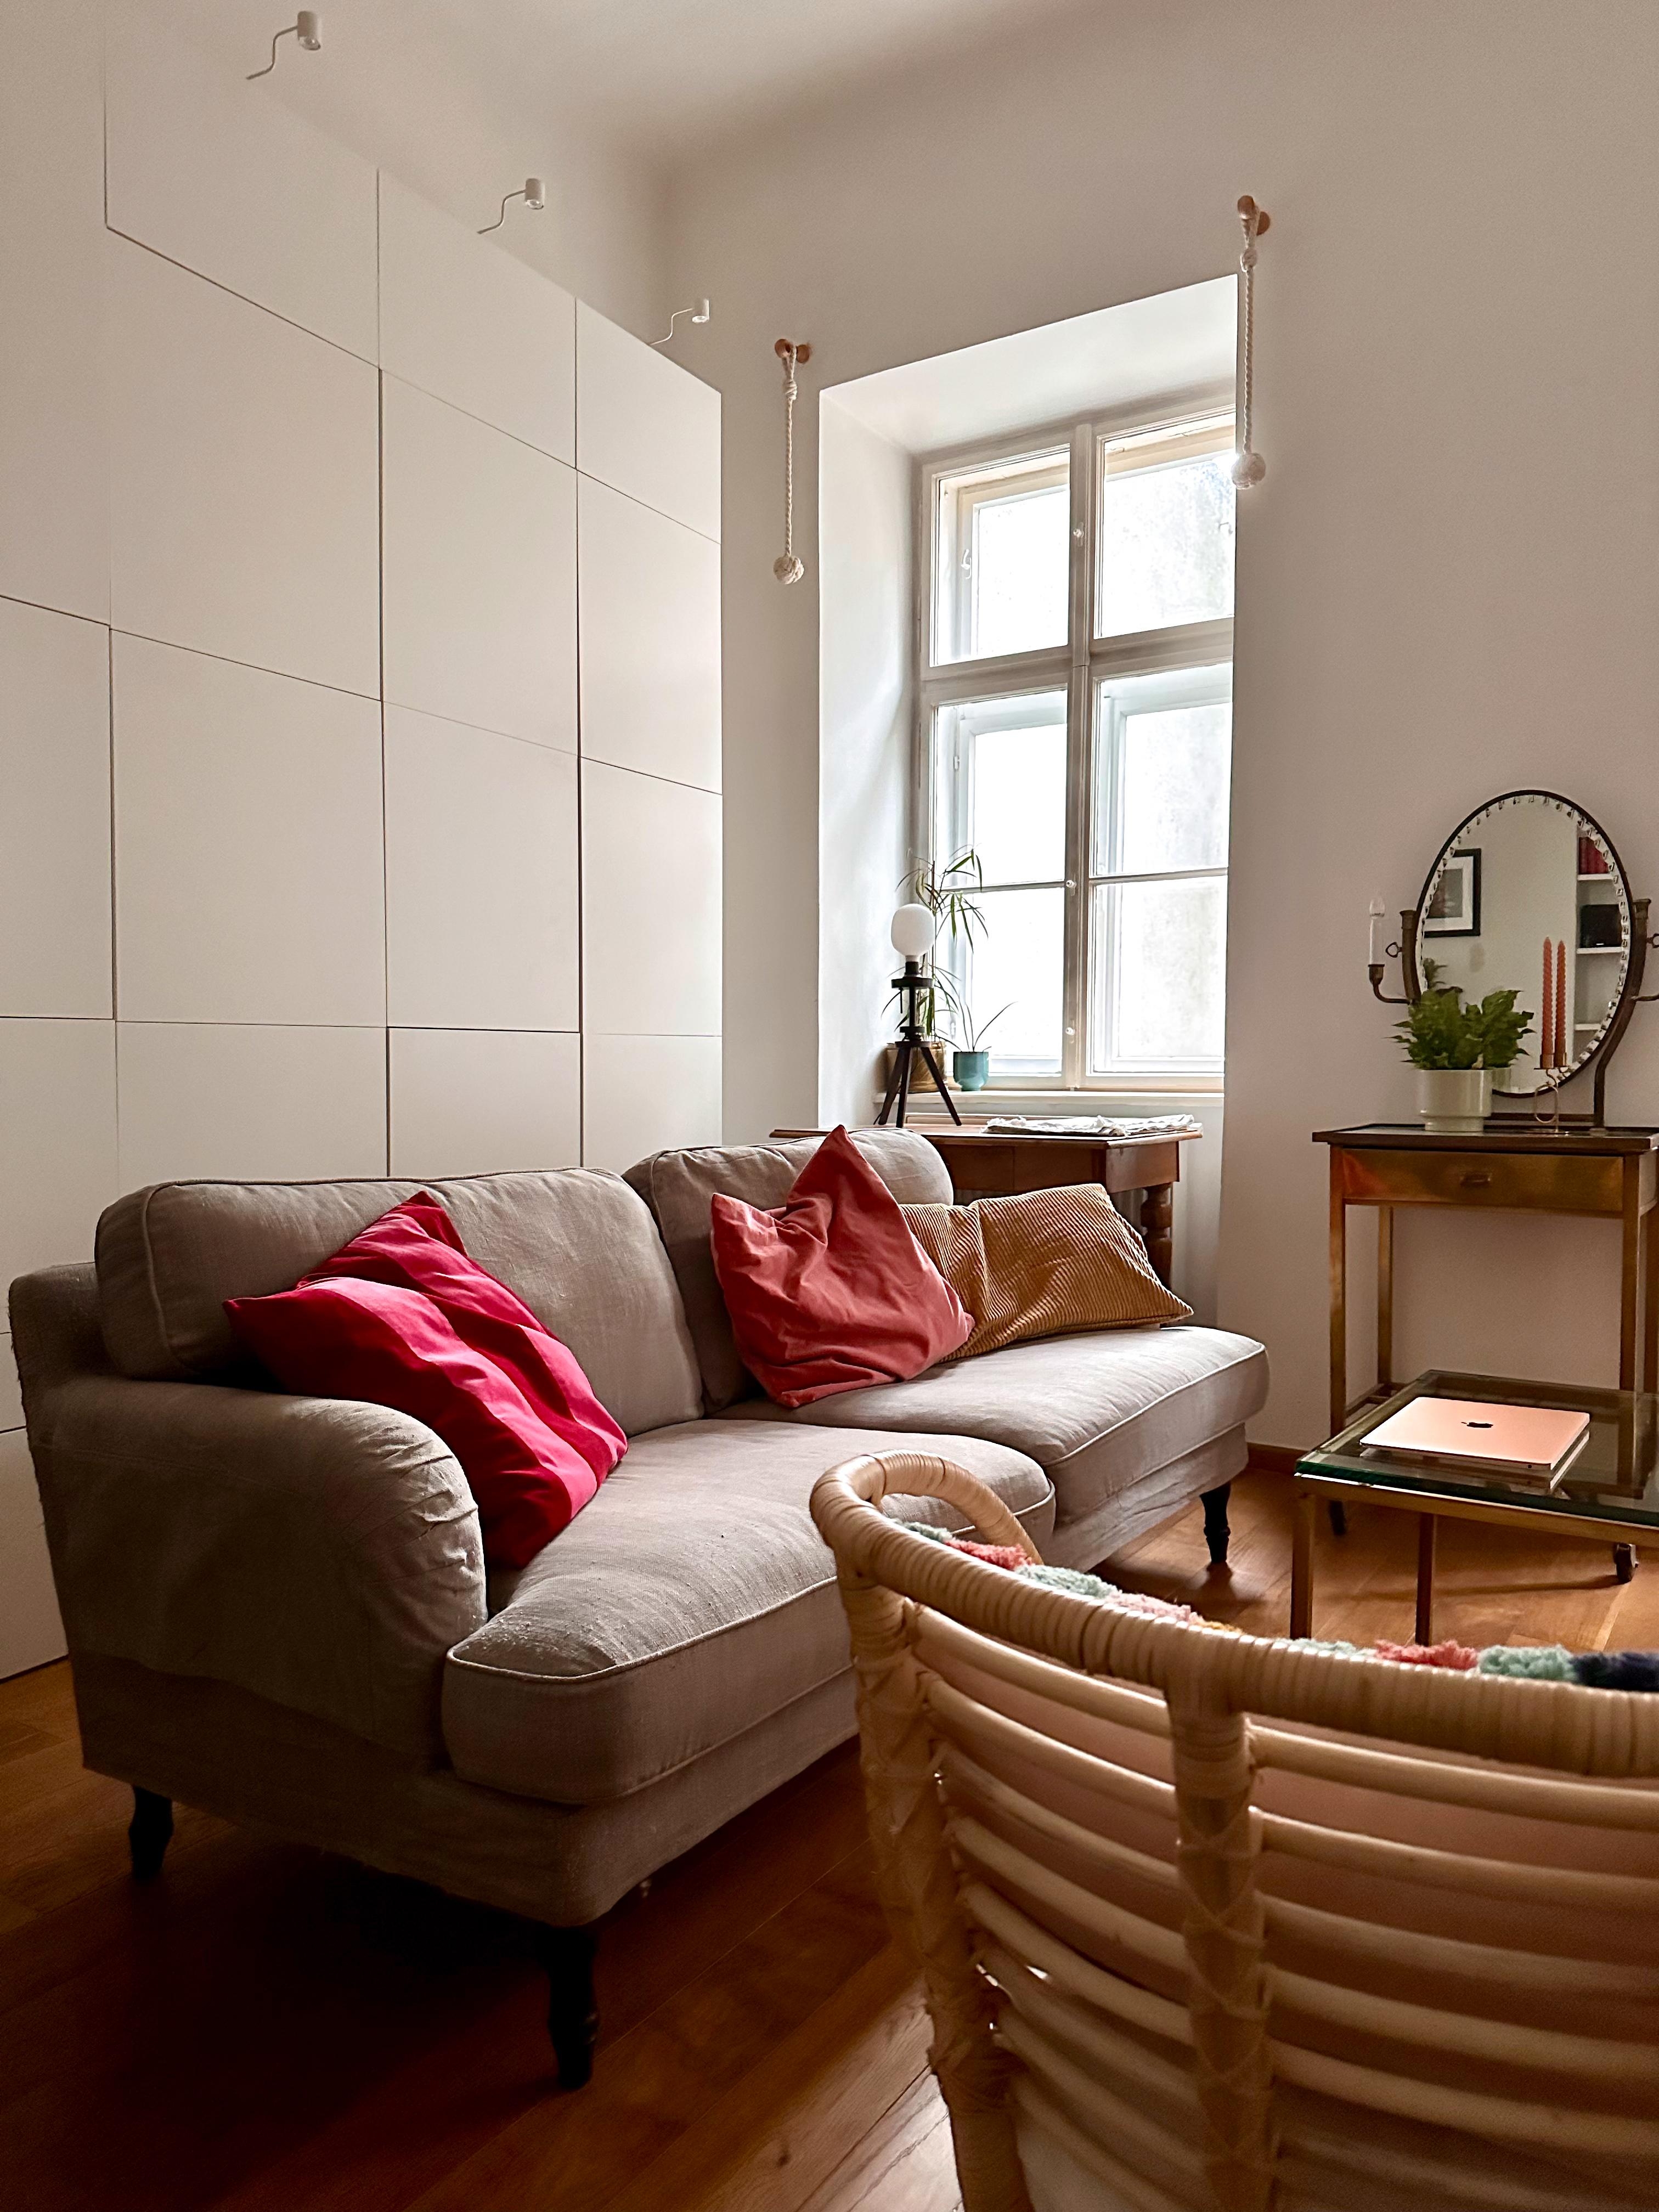 Umdekorieren dringend nötig 😅

#wohnzimmer #couch #sofa #kissen #altbau